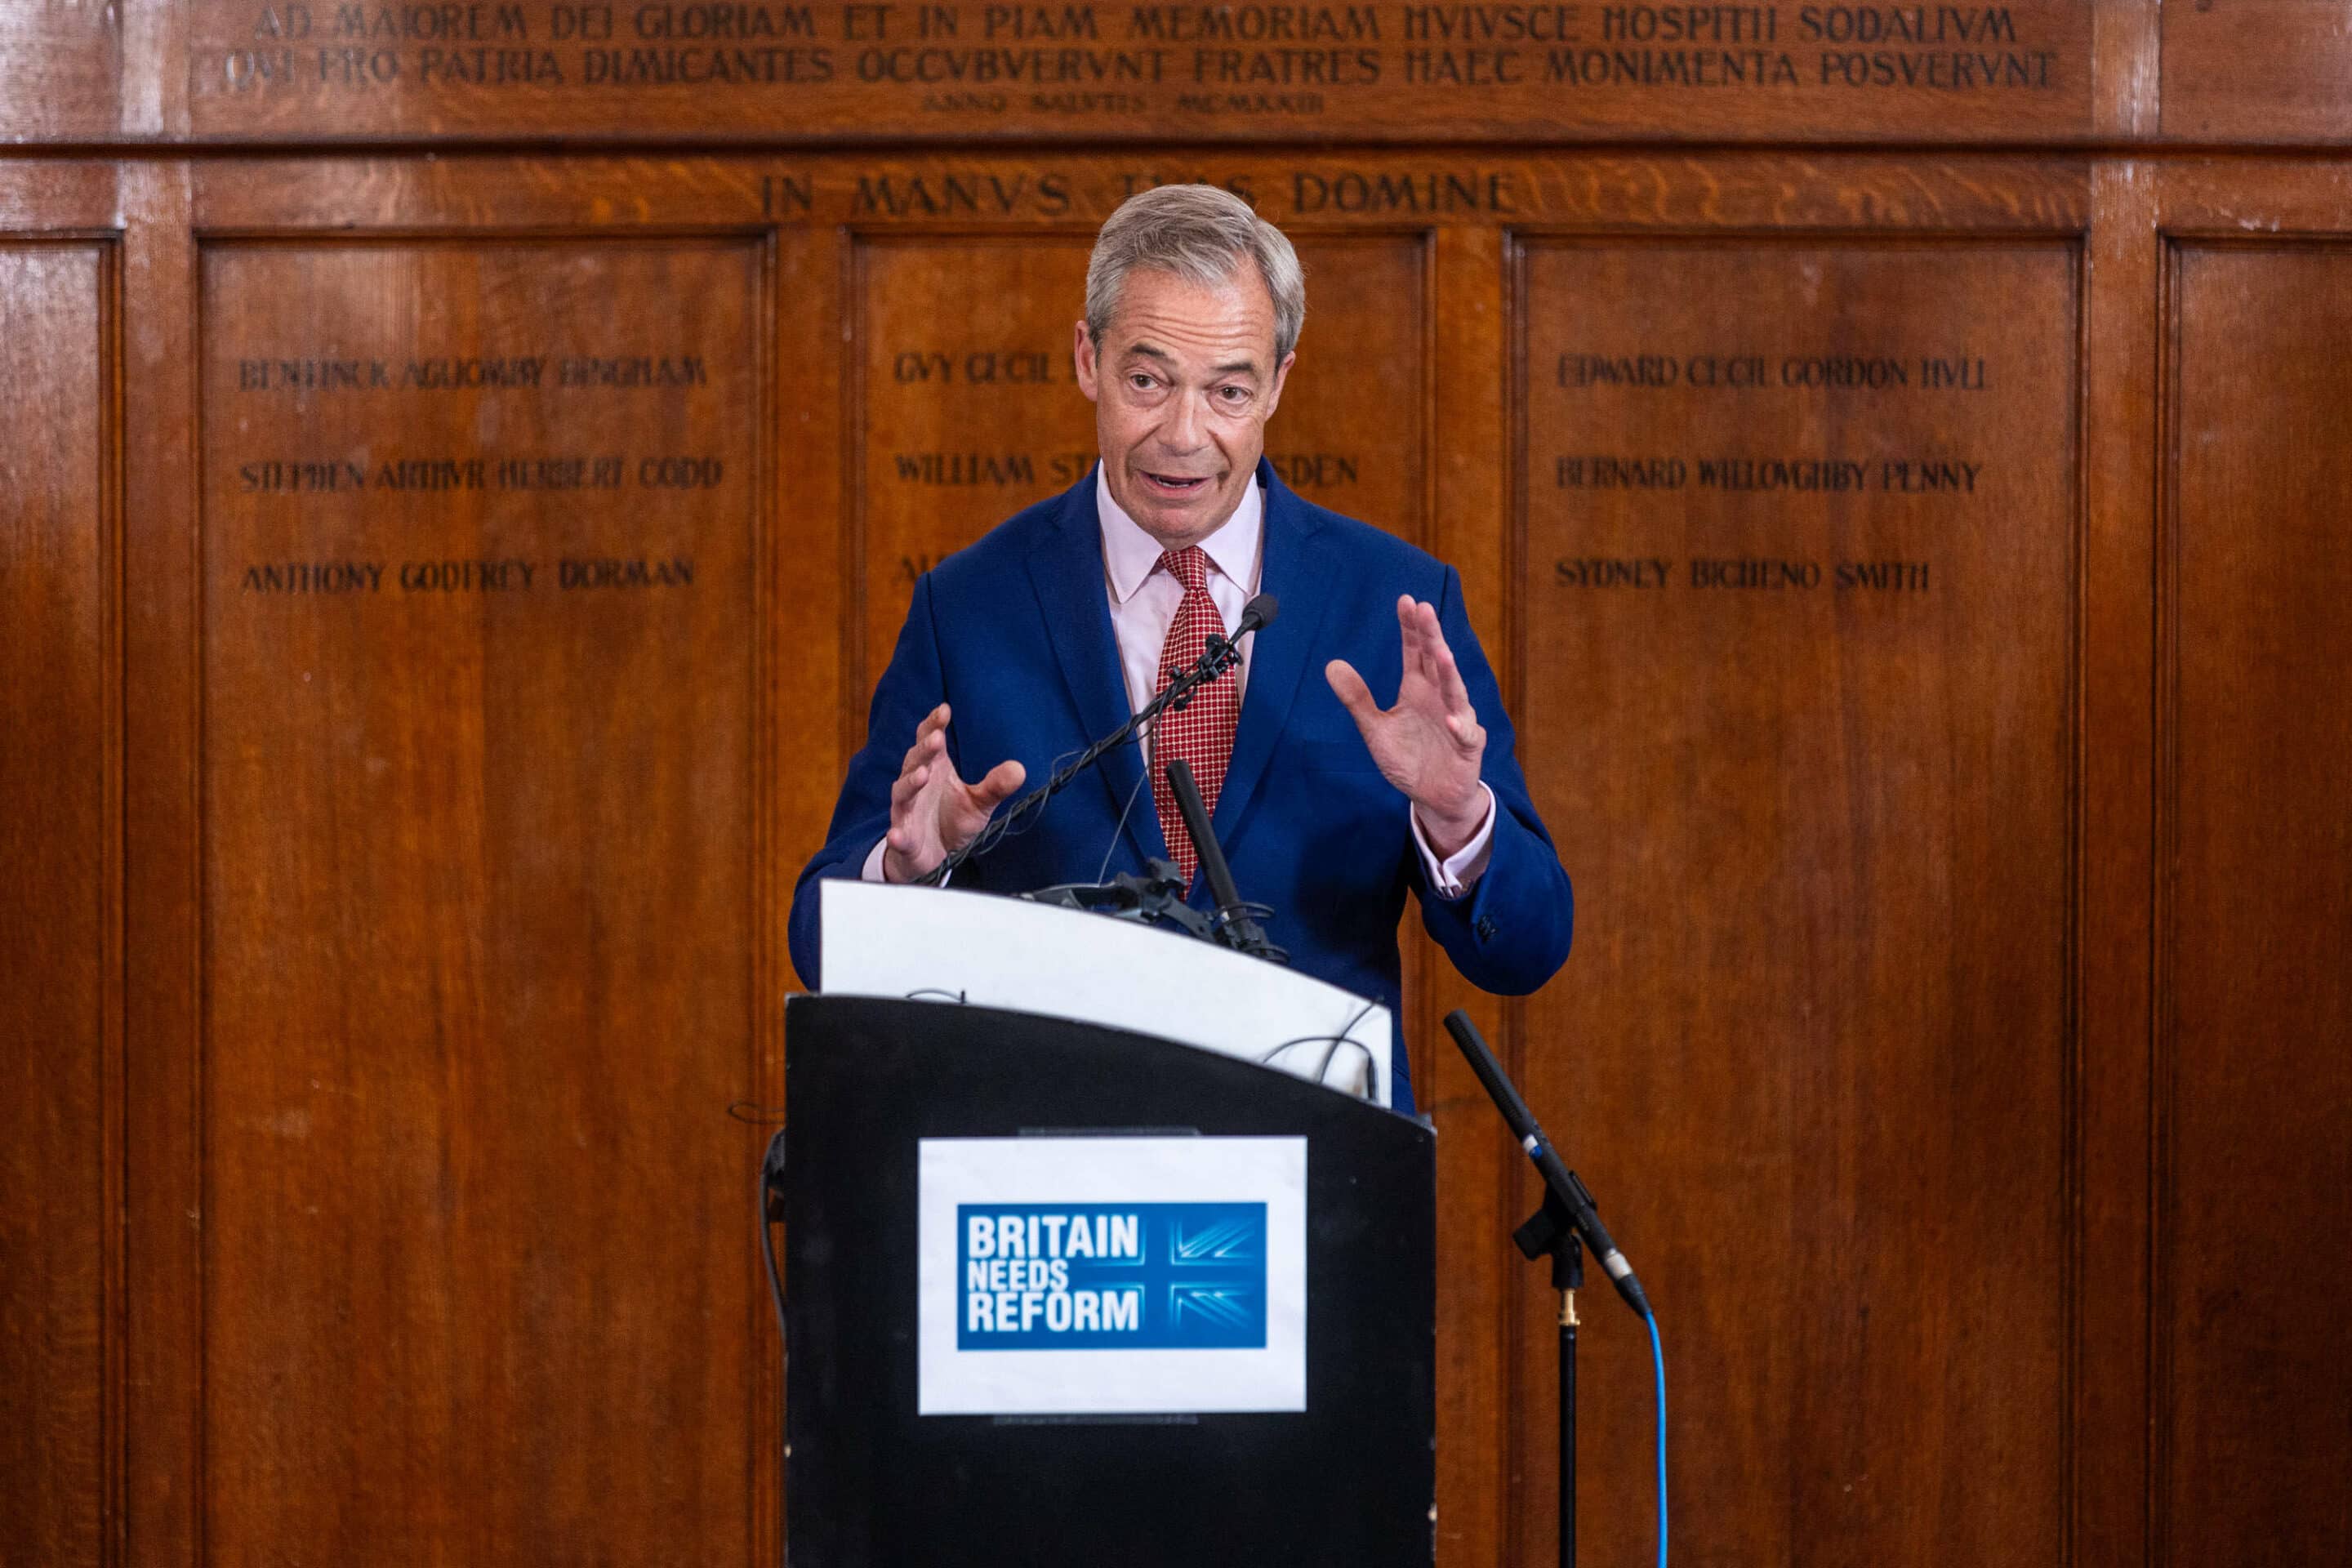 Le leader du Reform Party Nigel Farage tient une conférence de presse dans un pub du centre de Londres. Un récent sondage donne au parti réformiste une légère avance sur les conservateurs dans les élections générales. Élections politiques, Londres, Royaume-Uni - 14 juin. (C) Sipa